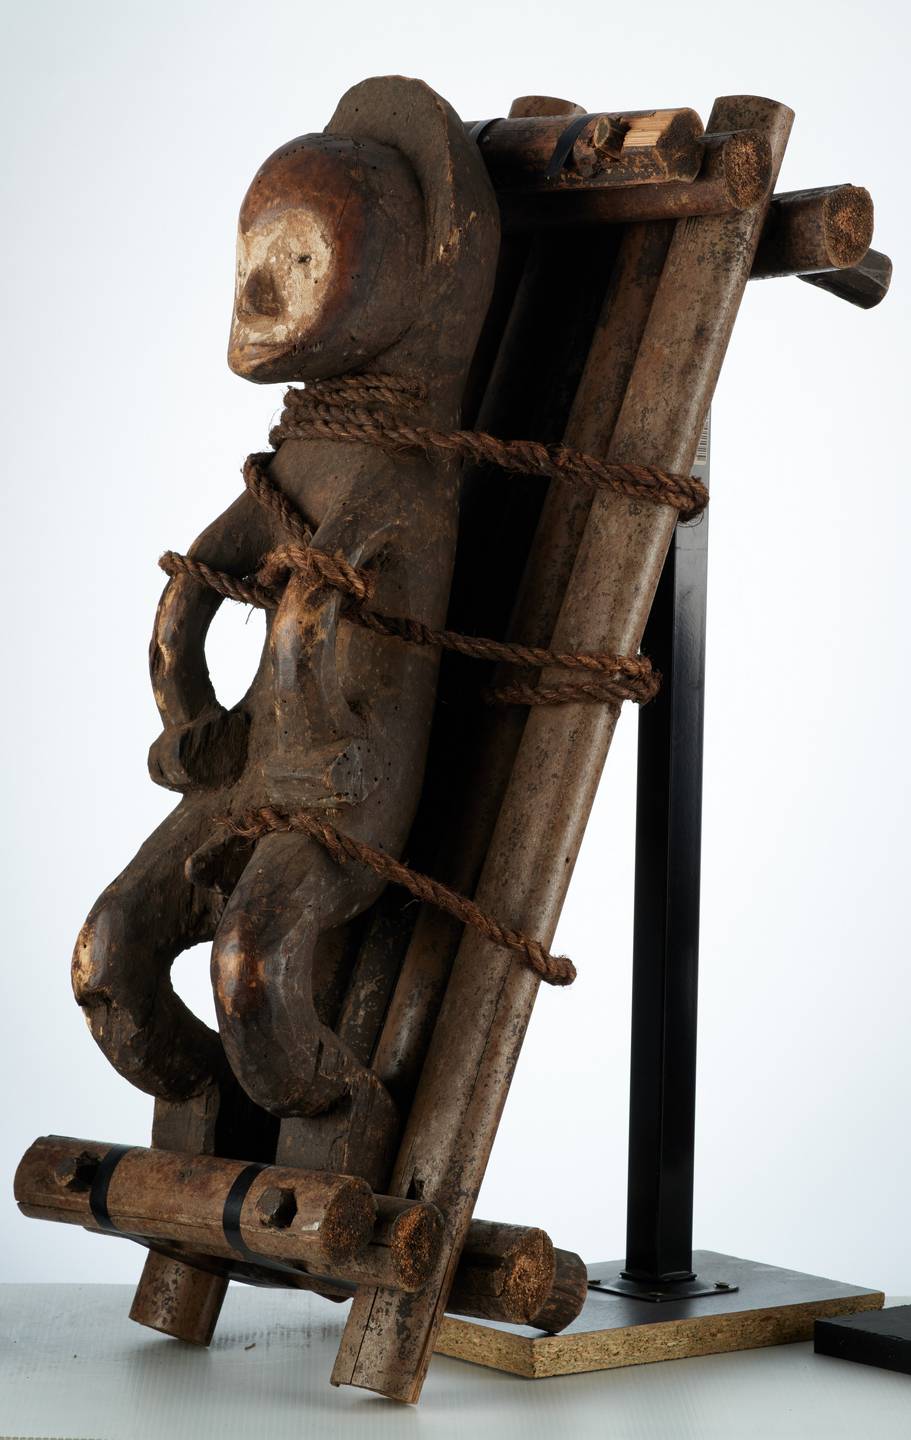 Mbole (pendu)n°1993, d`afrique : R.D.C., statuette Mbole (pendu)n°1993, masque ancien africain Mbole (pendu)n°1993, art du R.D.C. - Art Africain, collection privées Belgique. Statue africaine de la tribu des Mbole (pendu)n°1993, provenant du R.D.C., 1993:Très rare statue  complète; Mbolé condamné à mort attaché avec des cordes sur une civière.(col.Minga Zaire)voir n1889



. art,culture,masque,statue,statuette,pot,ivoire,exposition,expo,masque original,masques,statues,statuettes,pots,expositions,expo,masques originaux,collectionneur d`art,art africain,culture africaine,masque africain,statue africaine,statuette africaine,pot africain,ivoire africain,exposition africain,expo africain,masque origina africainl,masques africains,statues africaines,statuettes africaines,pots africains,expositions africaines,expo africaines,masques originaux  africains,collectionneur d`art africain